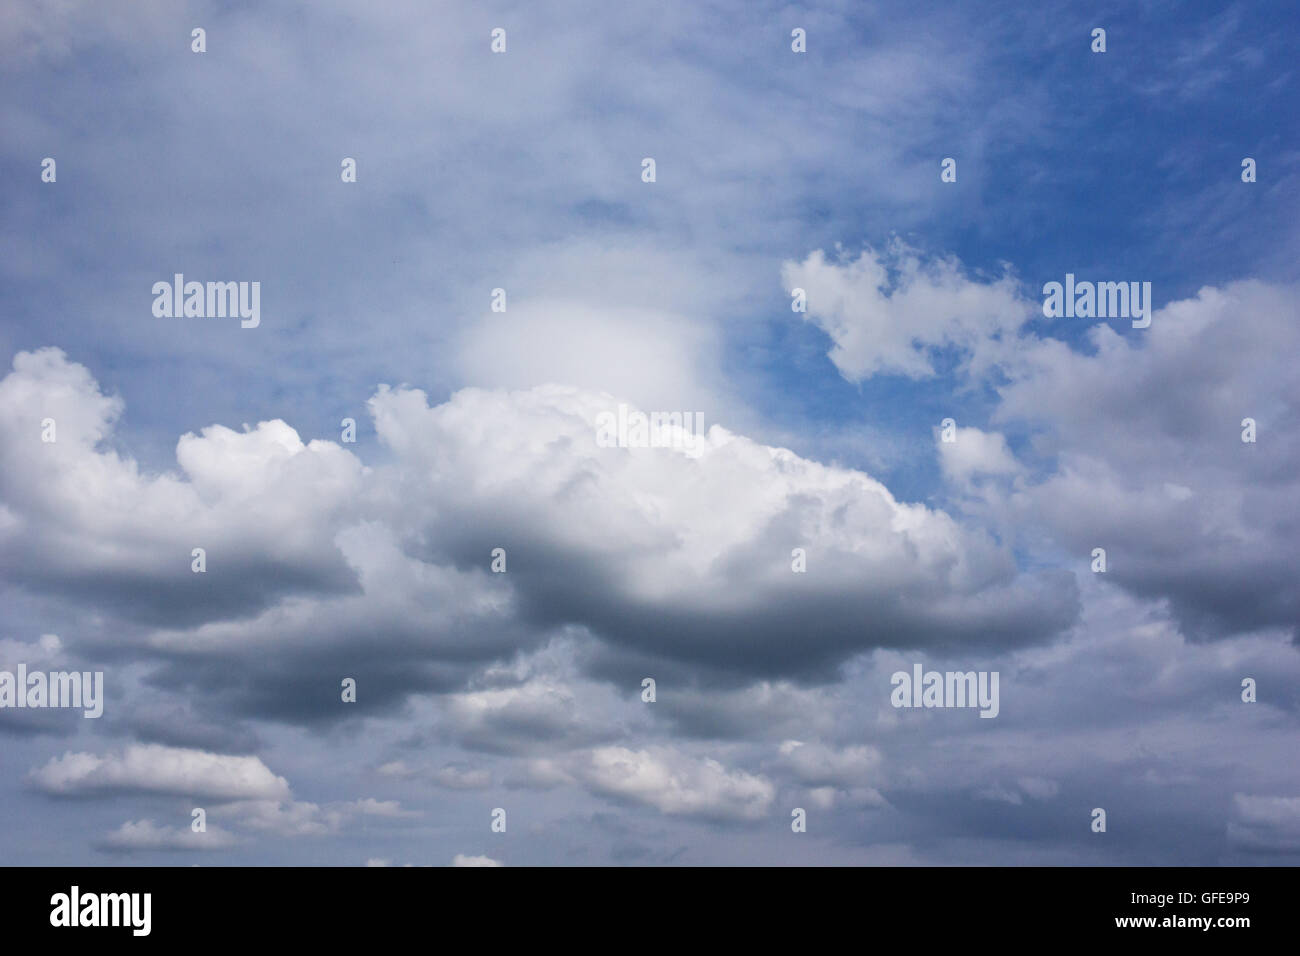 L'été bleu ciel avec nuages cirrus et cumulus blanc Banque D'Images